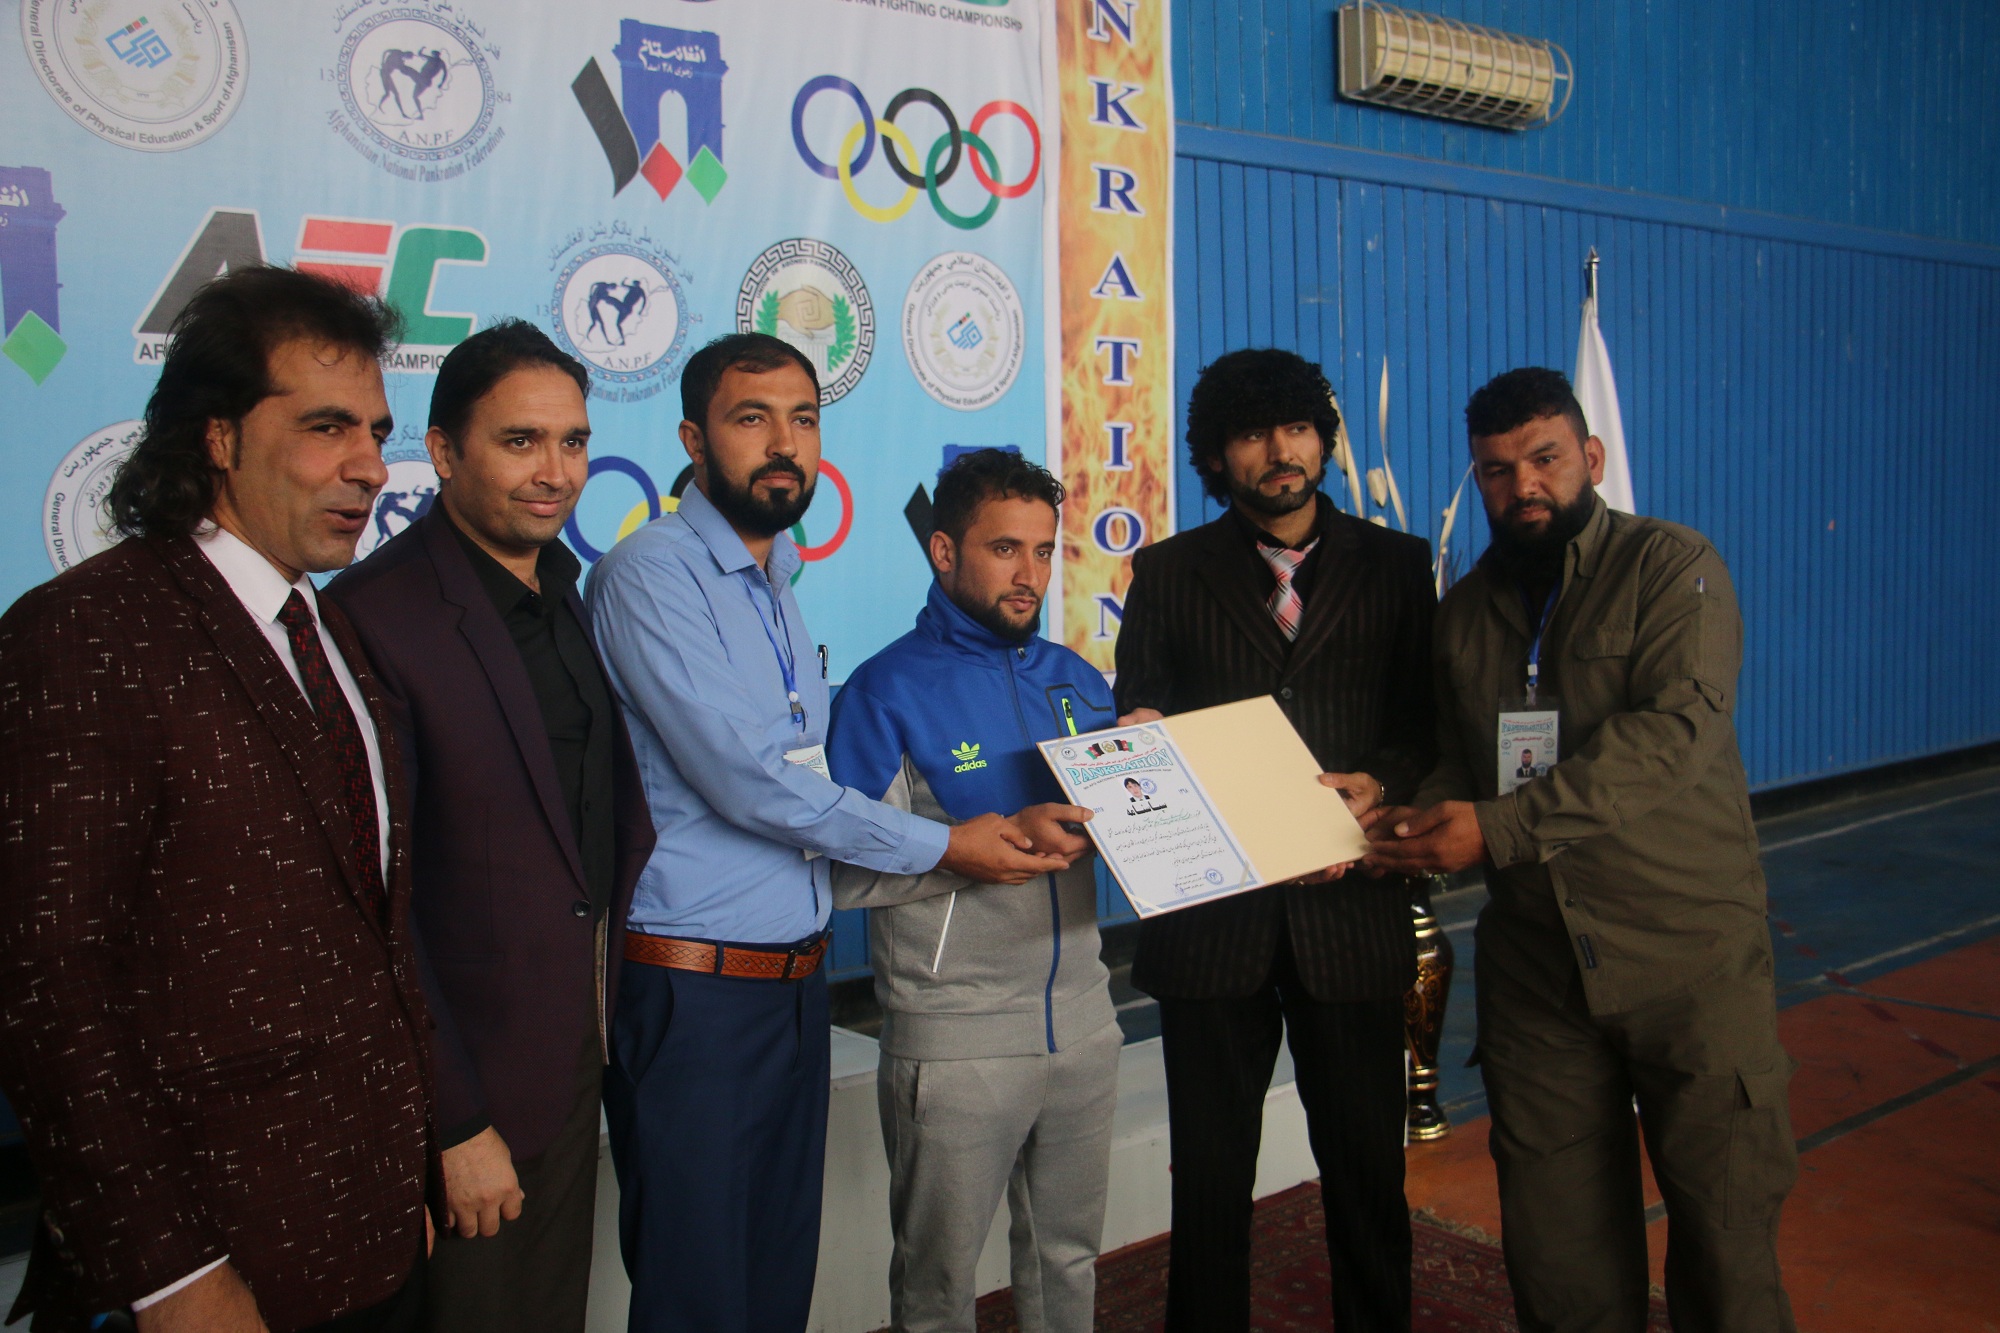 رقابت های منتخبه تیم ملی پانکریشن با شناسایی چهره های برتر امروز در کابل پایان یافت